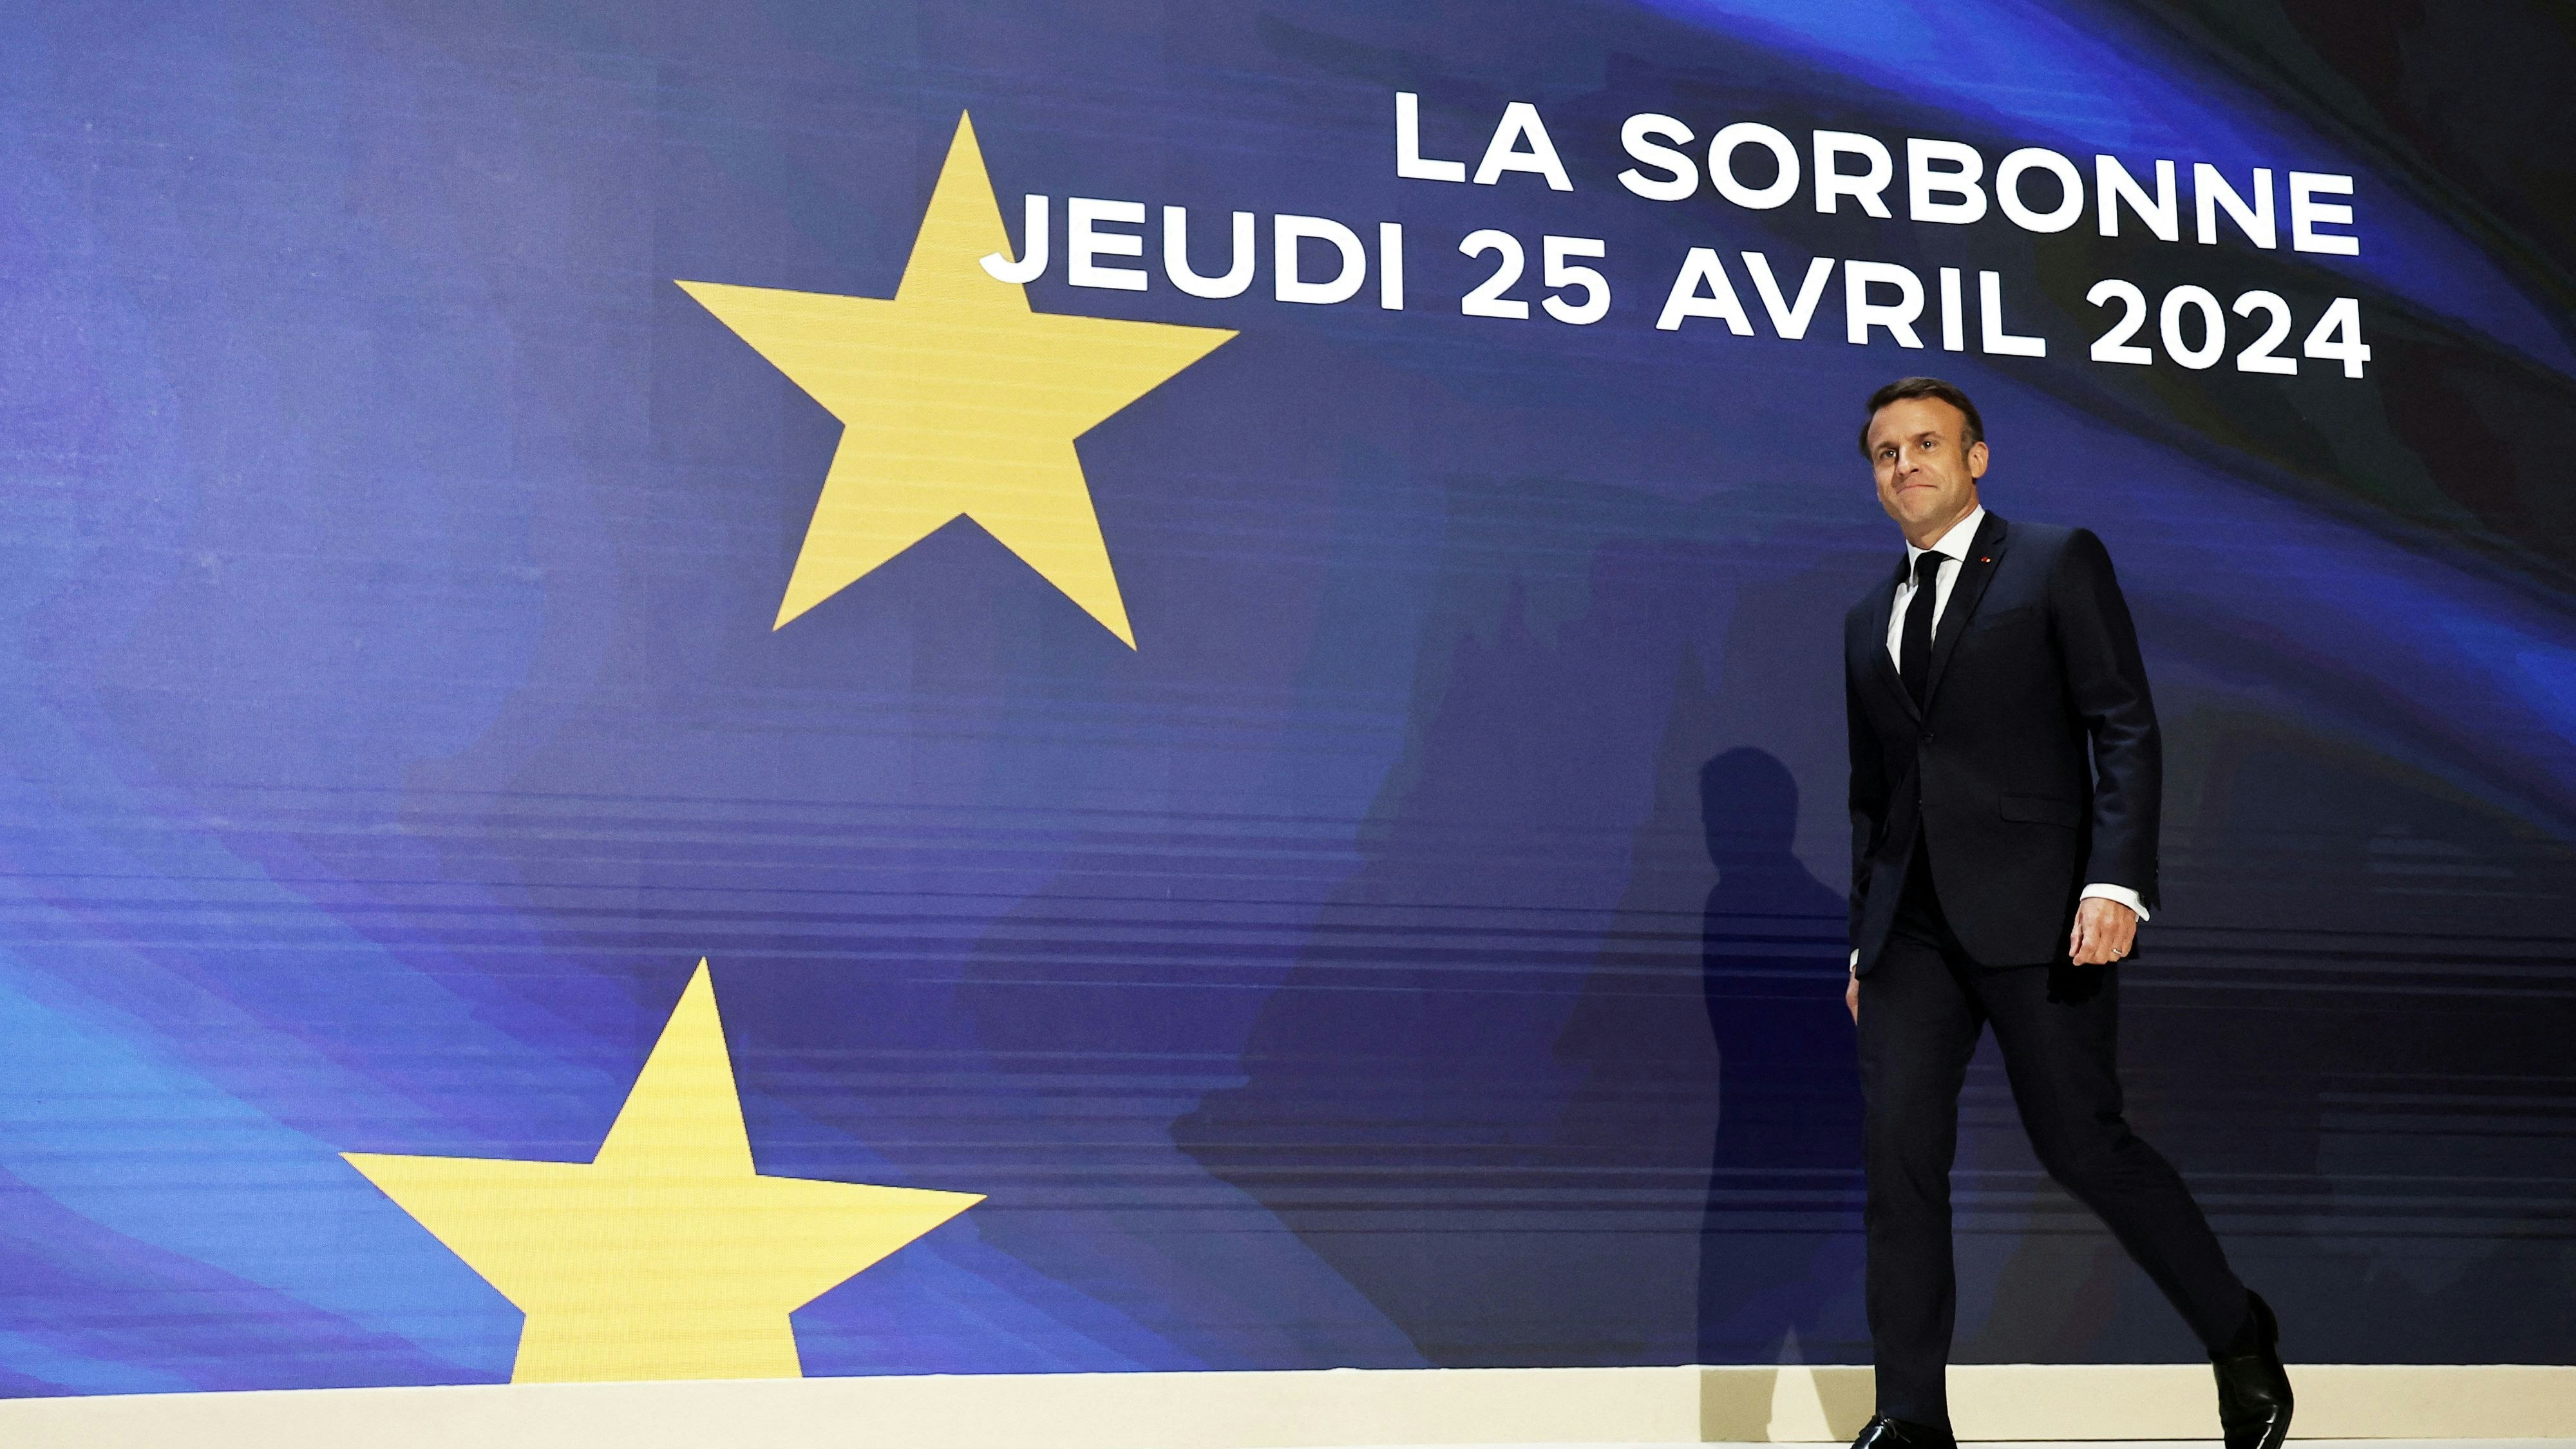 "Europas Humanisms ist zerbrechlich": Macron am Weg zu seiner Sorbonne-Rede